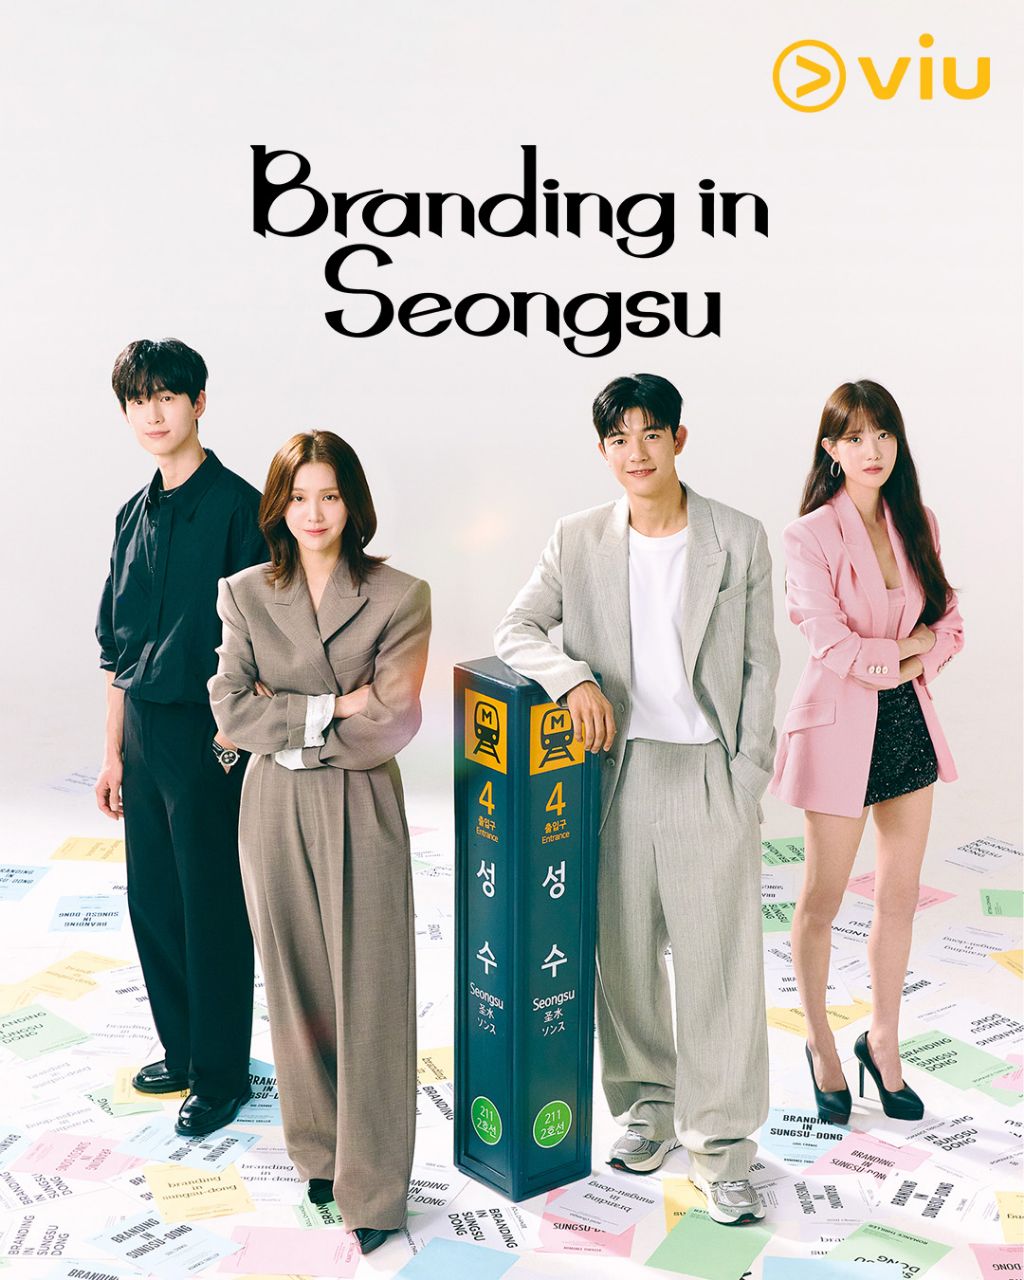 مسلسل العلامة التجارية في سيونغسو Branding in Seongsu الحلقة 5